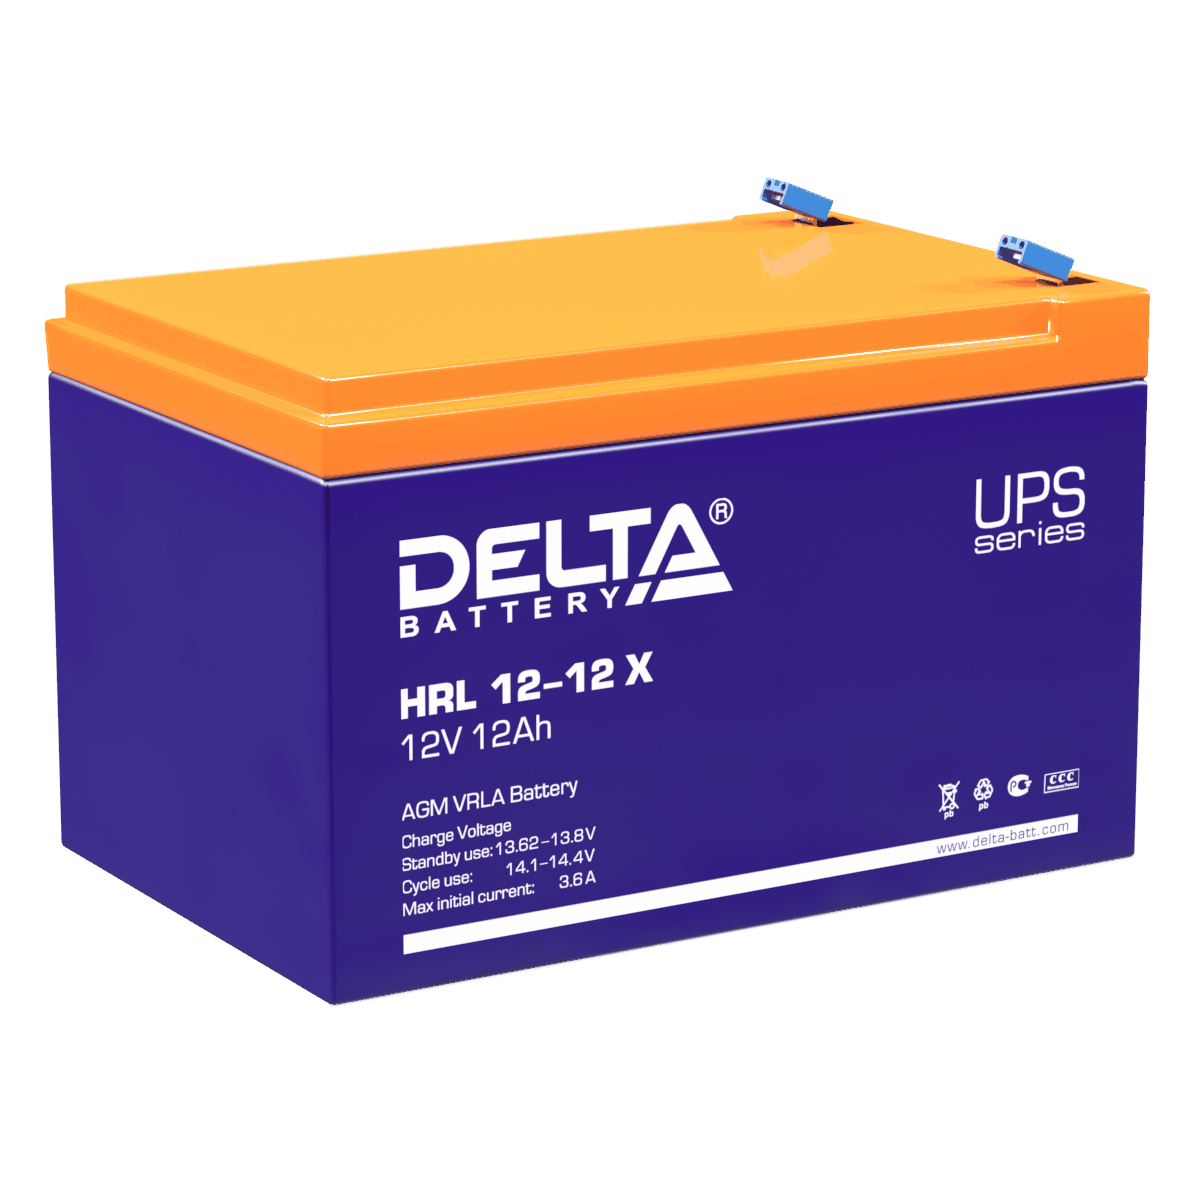 Все Батареи DELTA HRL 12-12 X видеонаблюдения в магазине Vidos Group